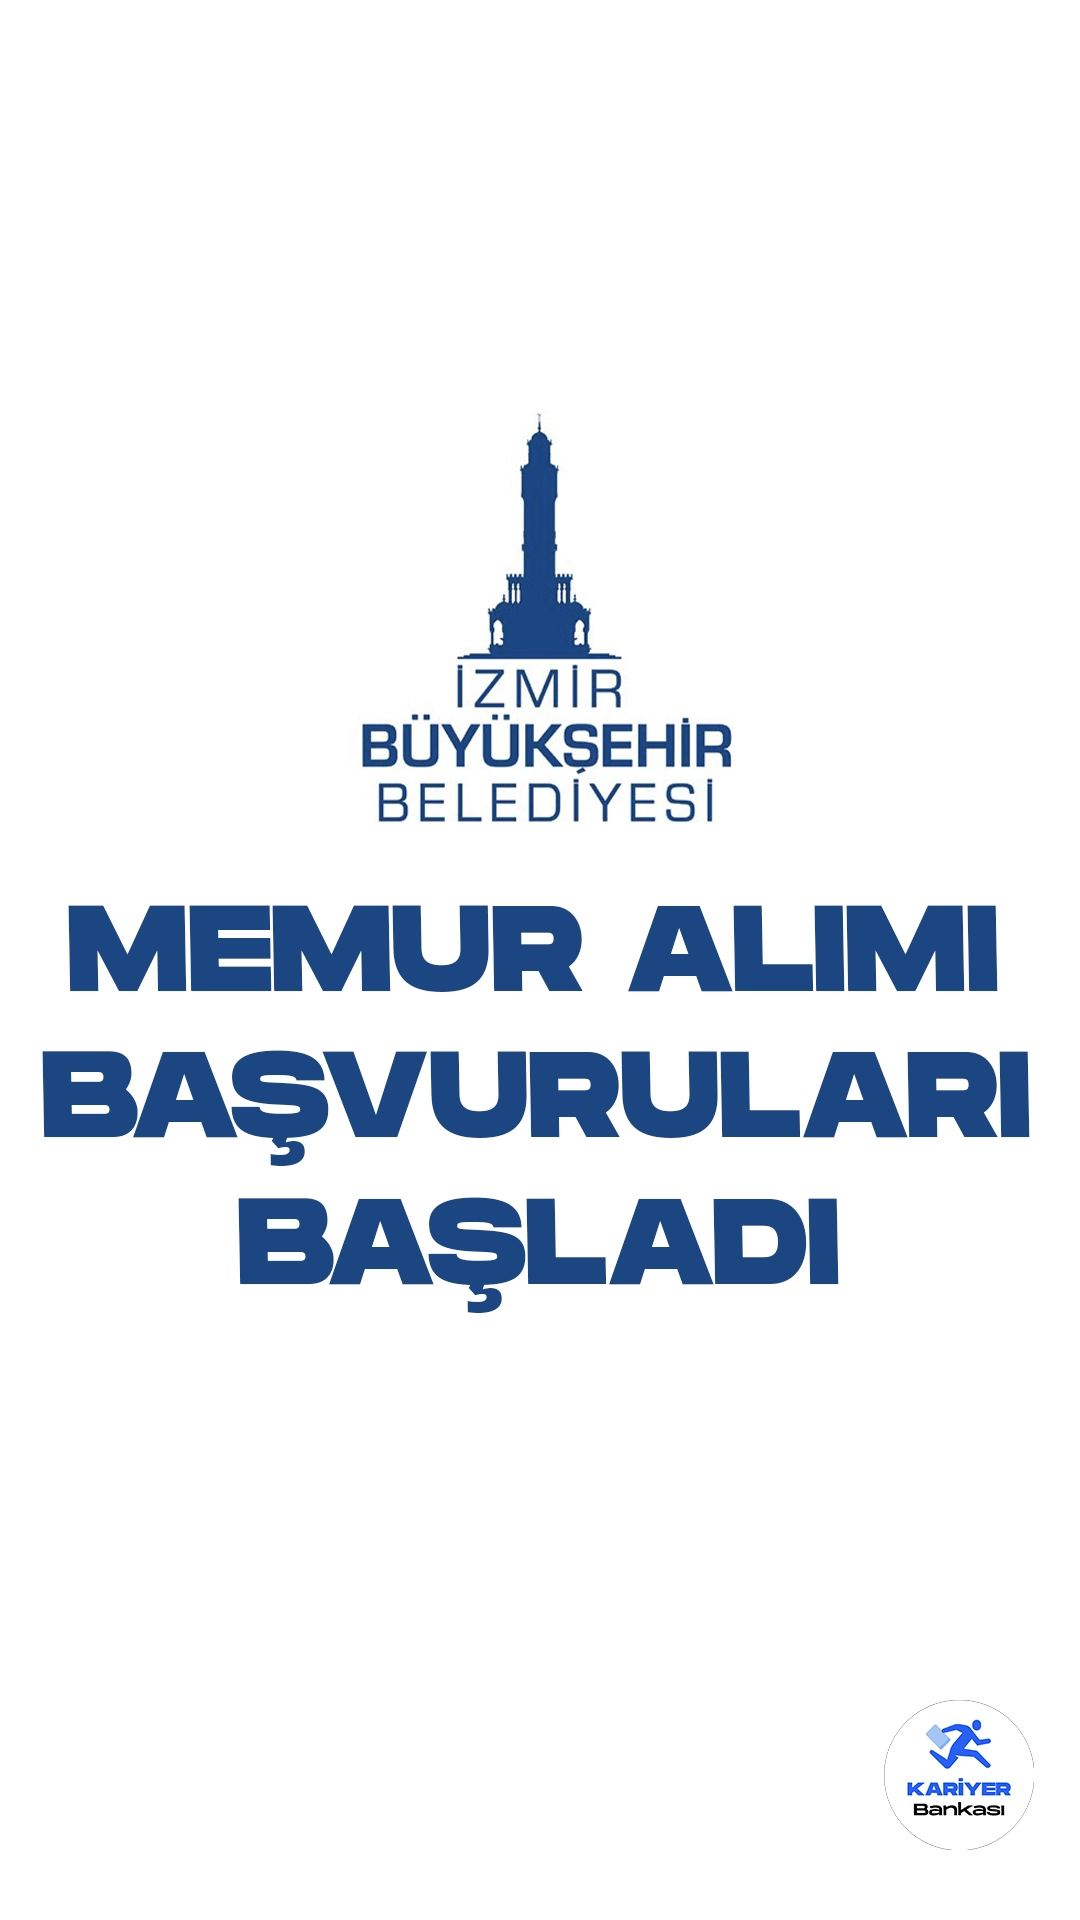 İzmir Büyükşehir Belediyesi memur alımı için başvuru işlemleri başladı. Başvuru şartları ve diğer detaylar bu haberimizde...